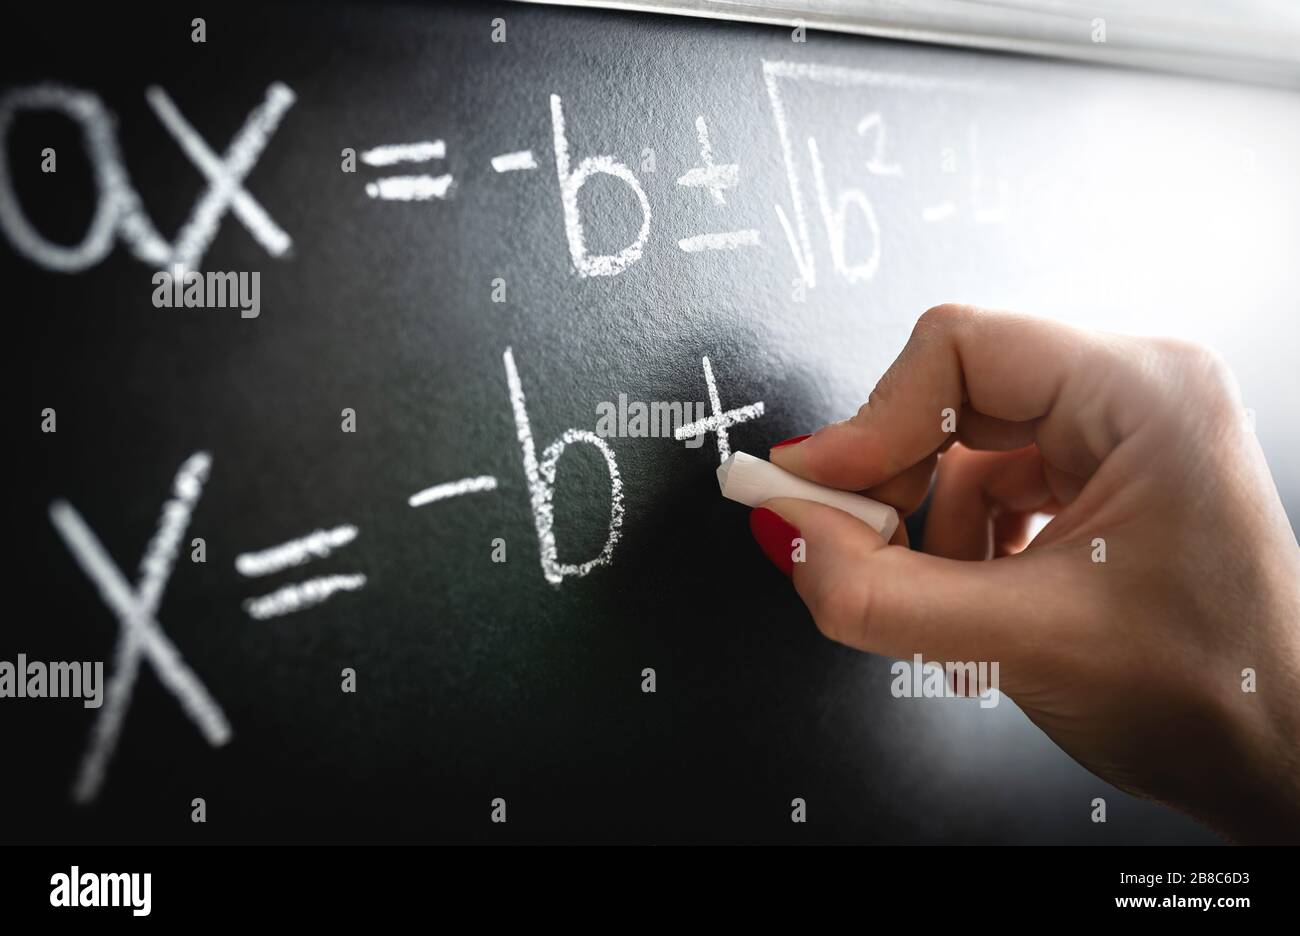 Equazione matematica, funzione o calcolo su lavagna. Insegnante che scrive in lavagna durante la lezione e la lezione in classe scolastica. Foto Stock